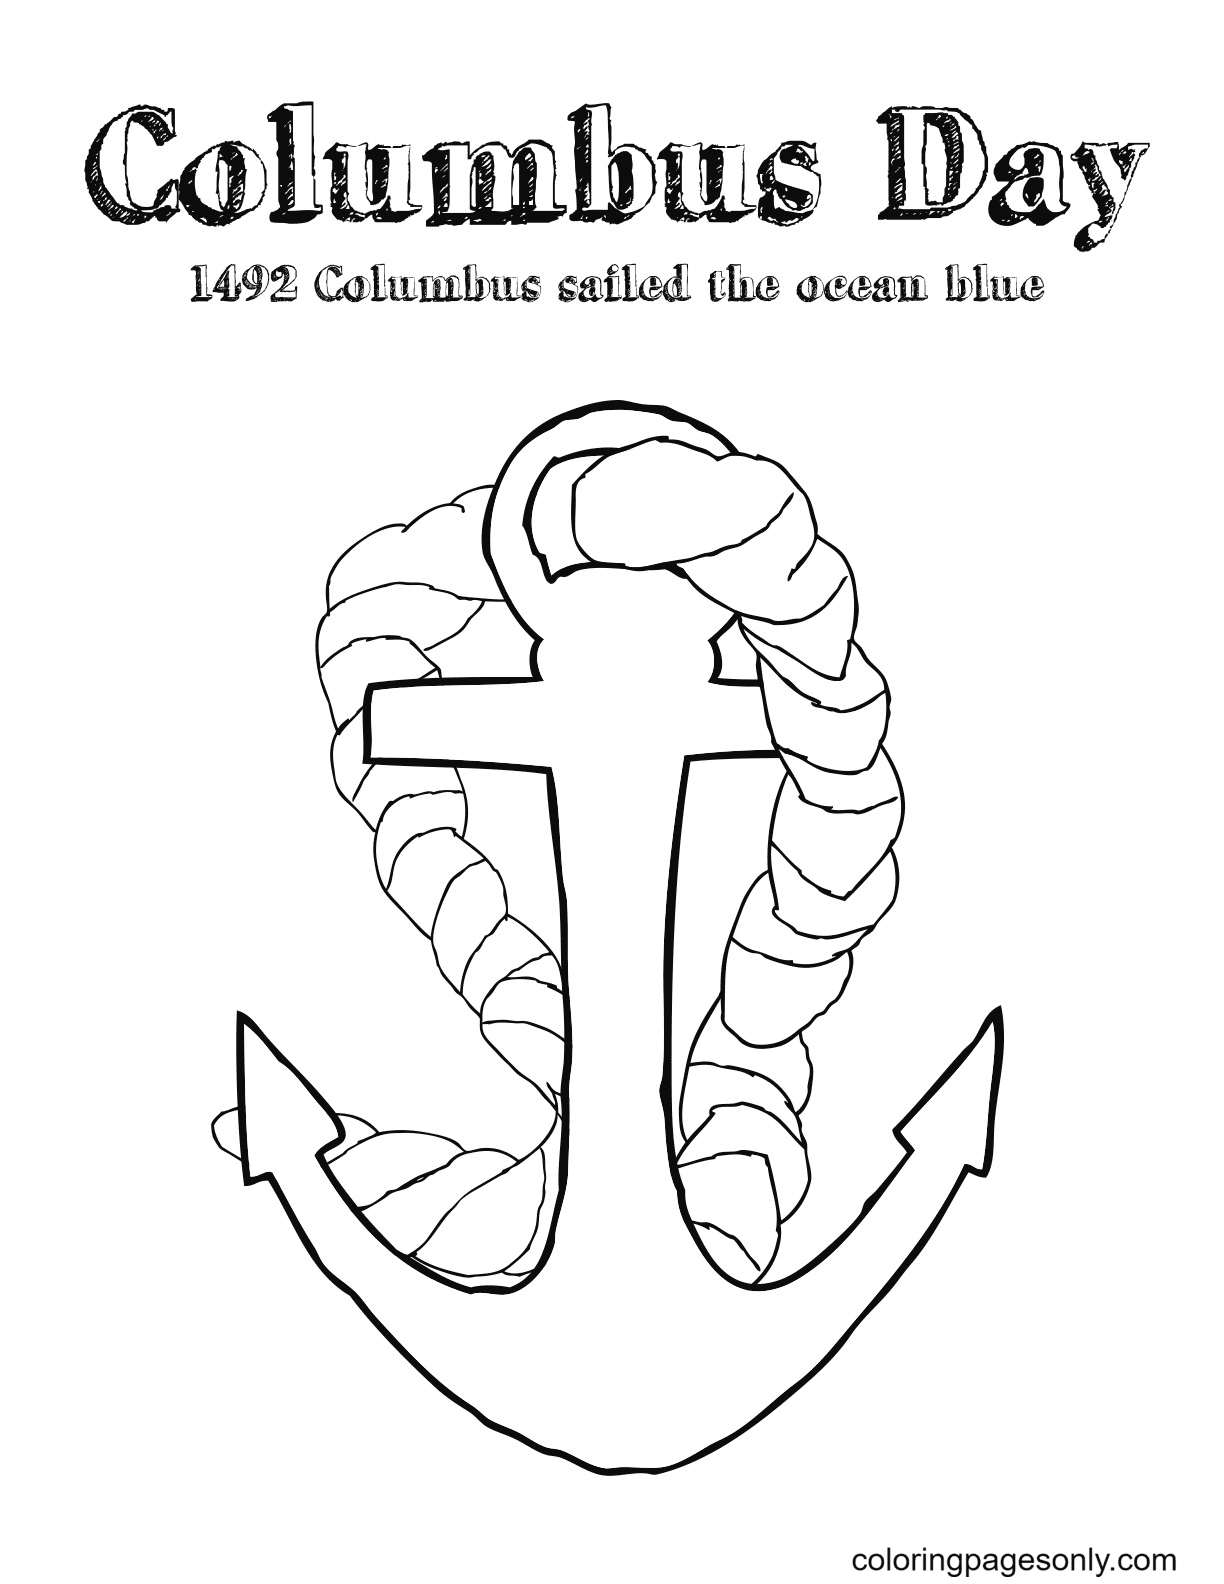 哥伦布日 1492 免费哥伦布日